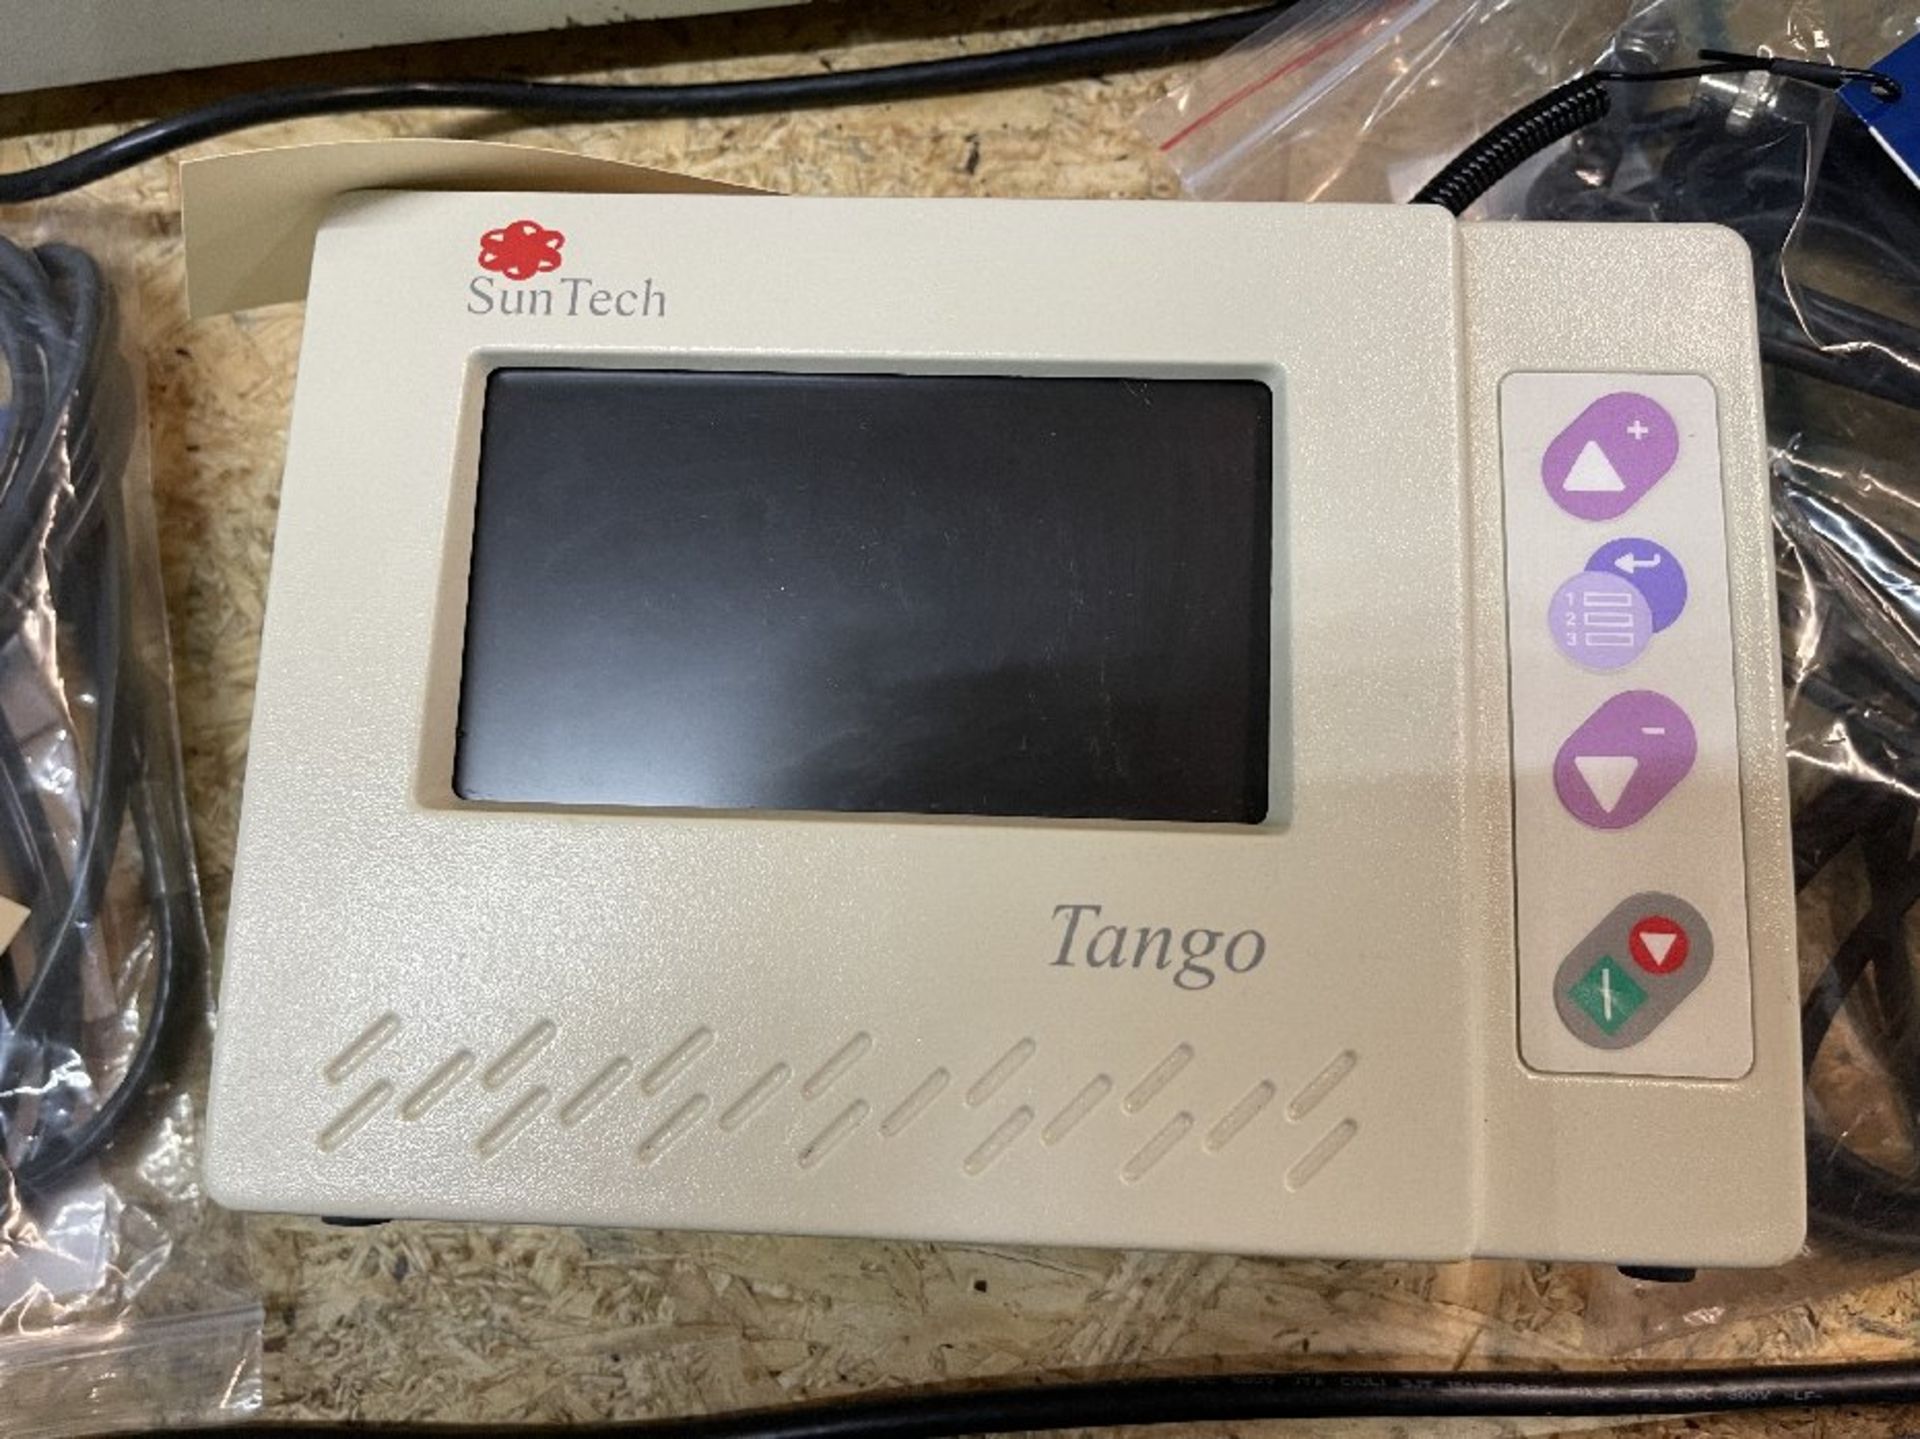 SunTech Tango Stress BP - Image 2 of 3